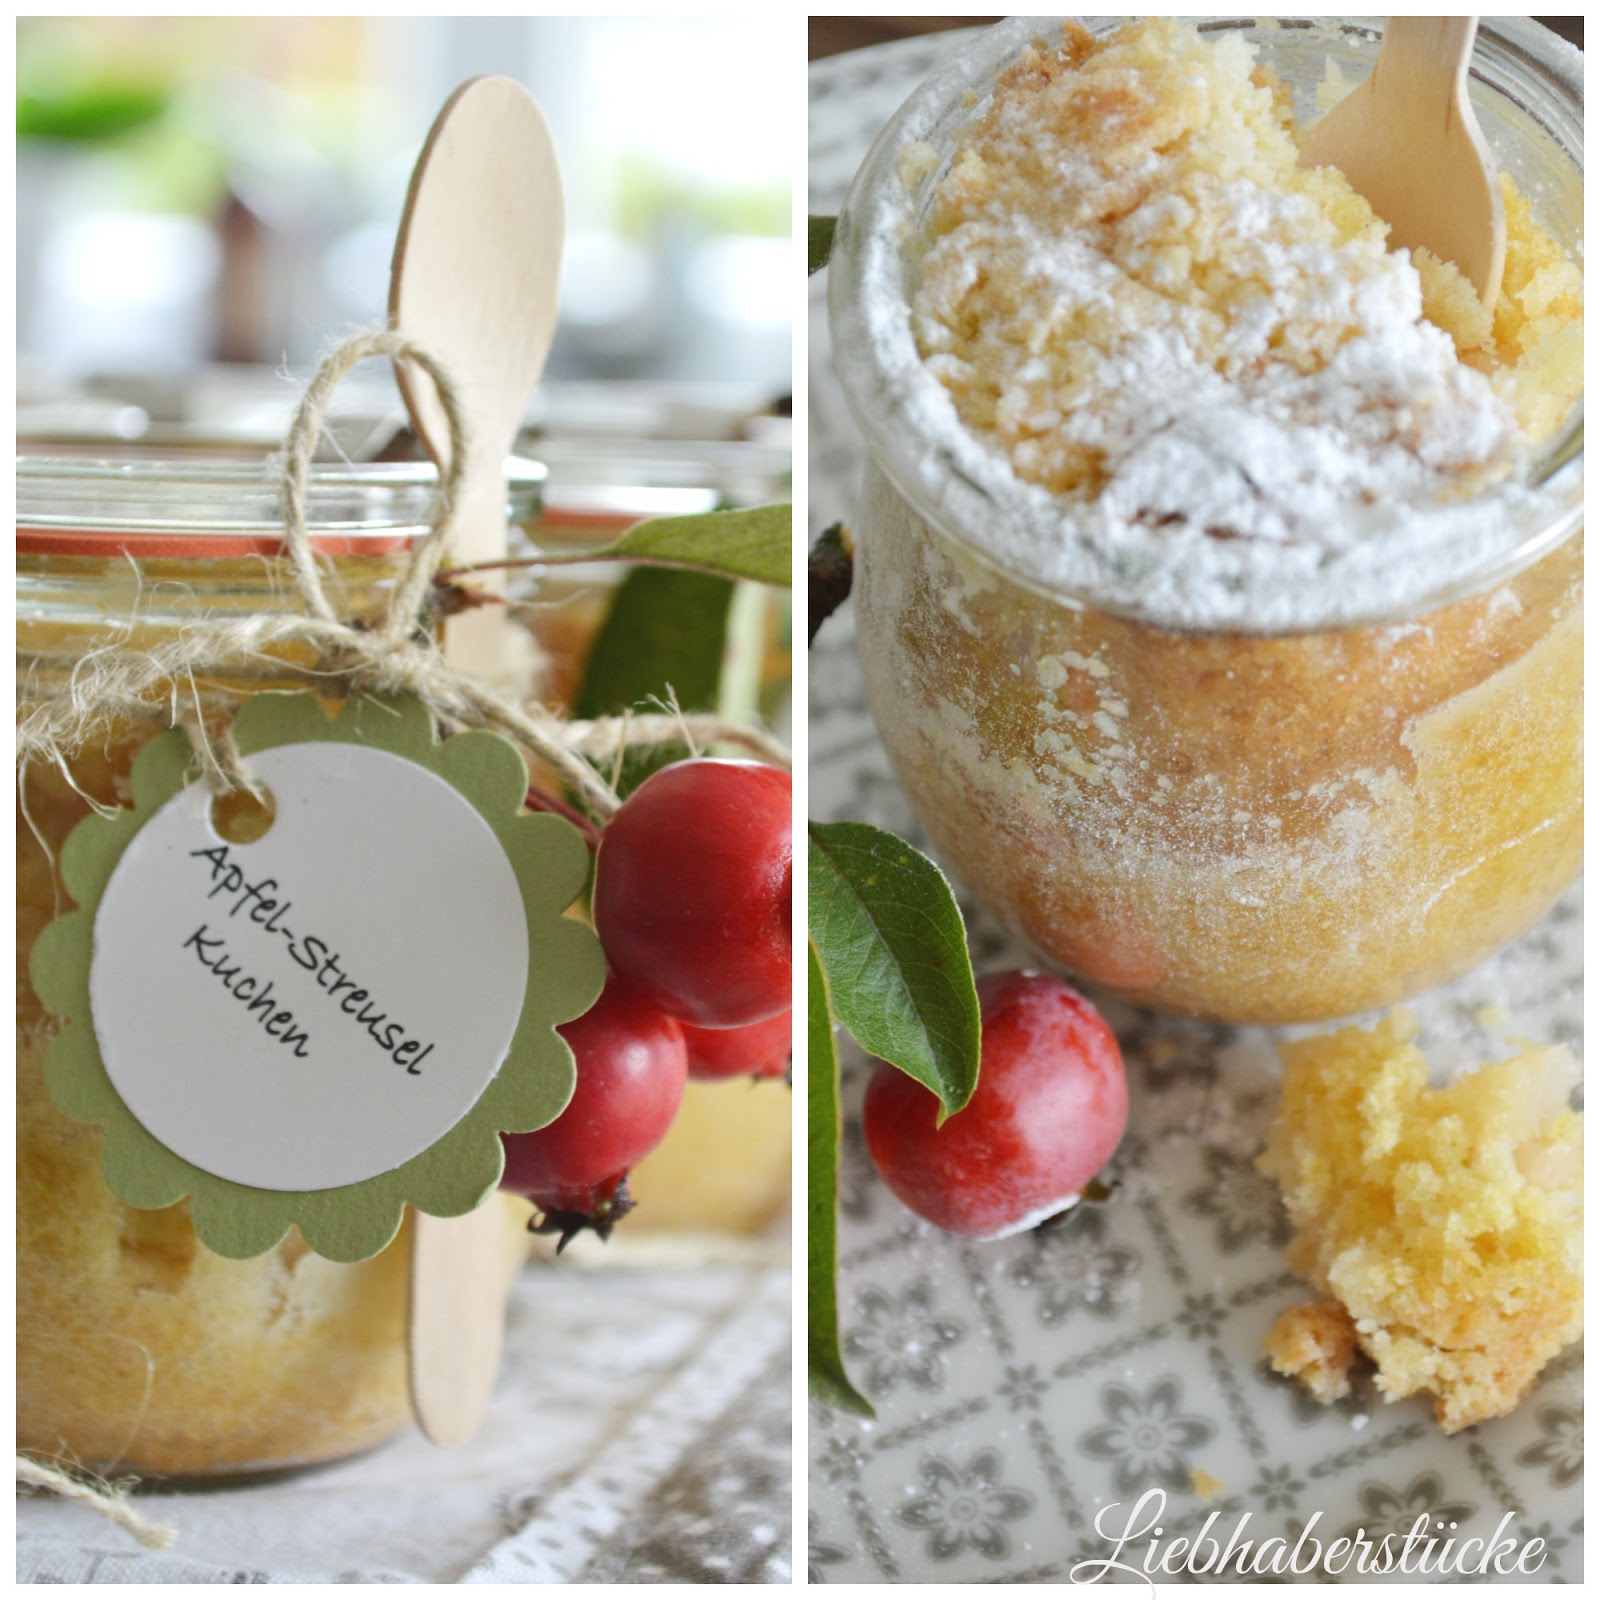 Liebhaberstücke: Apfel-Streusel-Kuchen im Glas